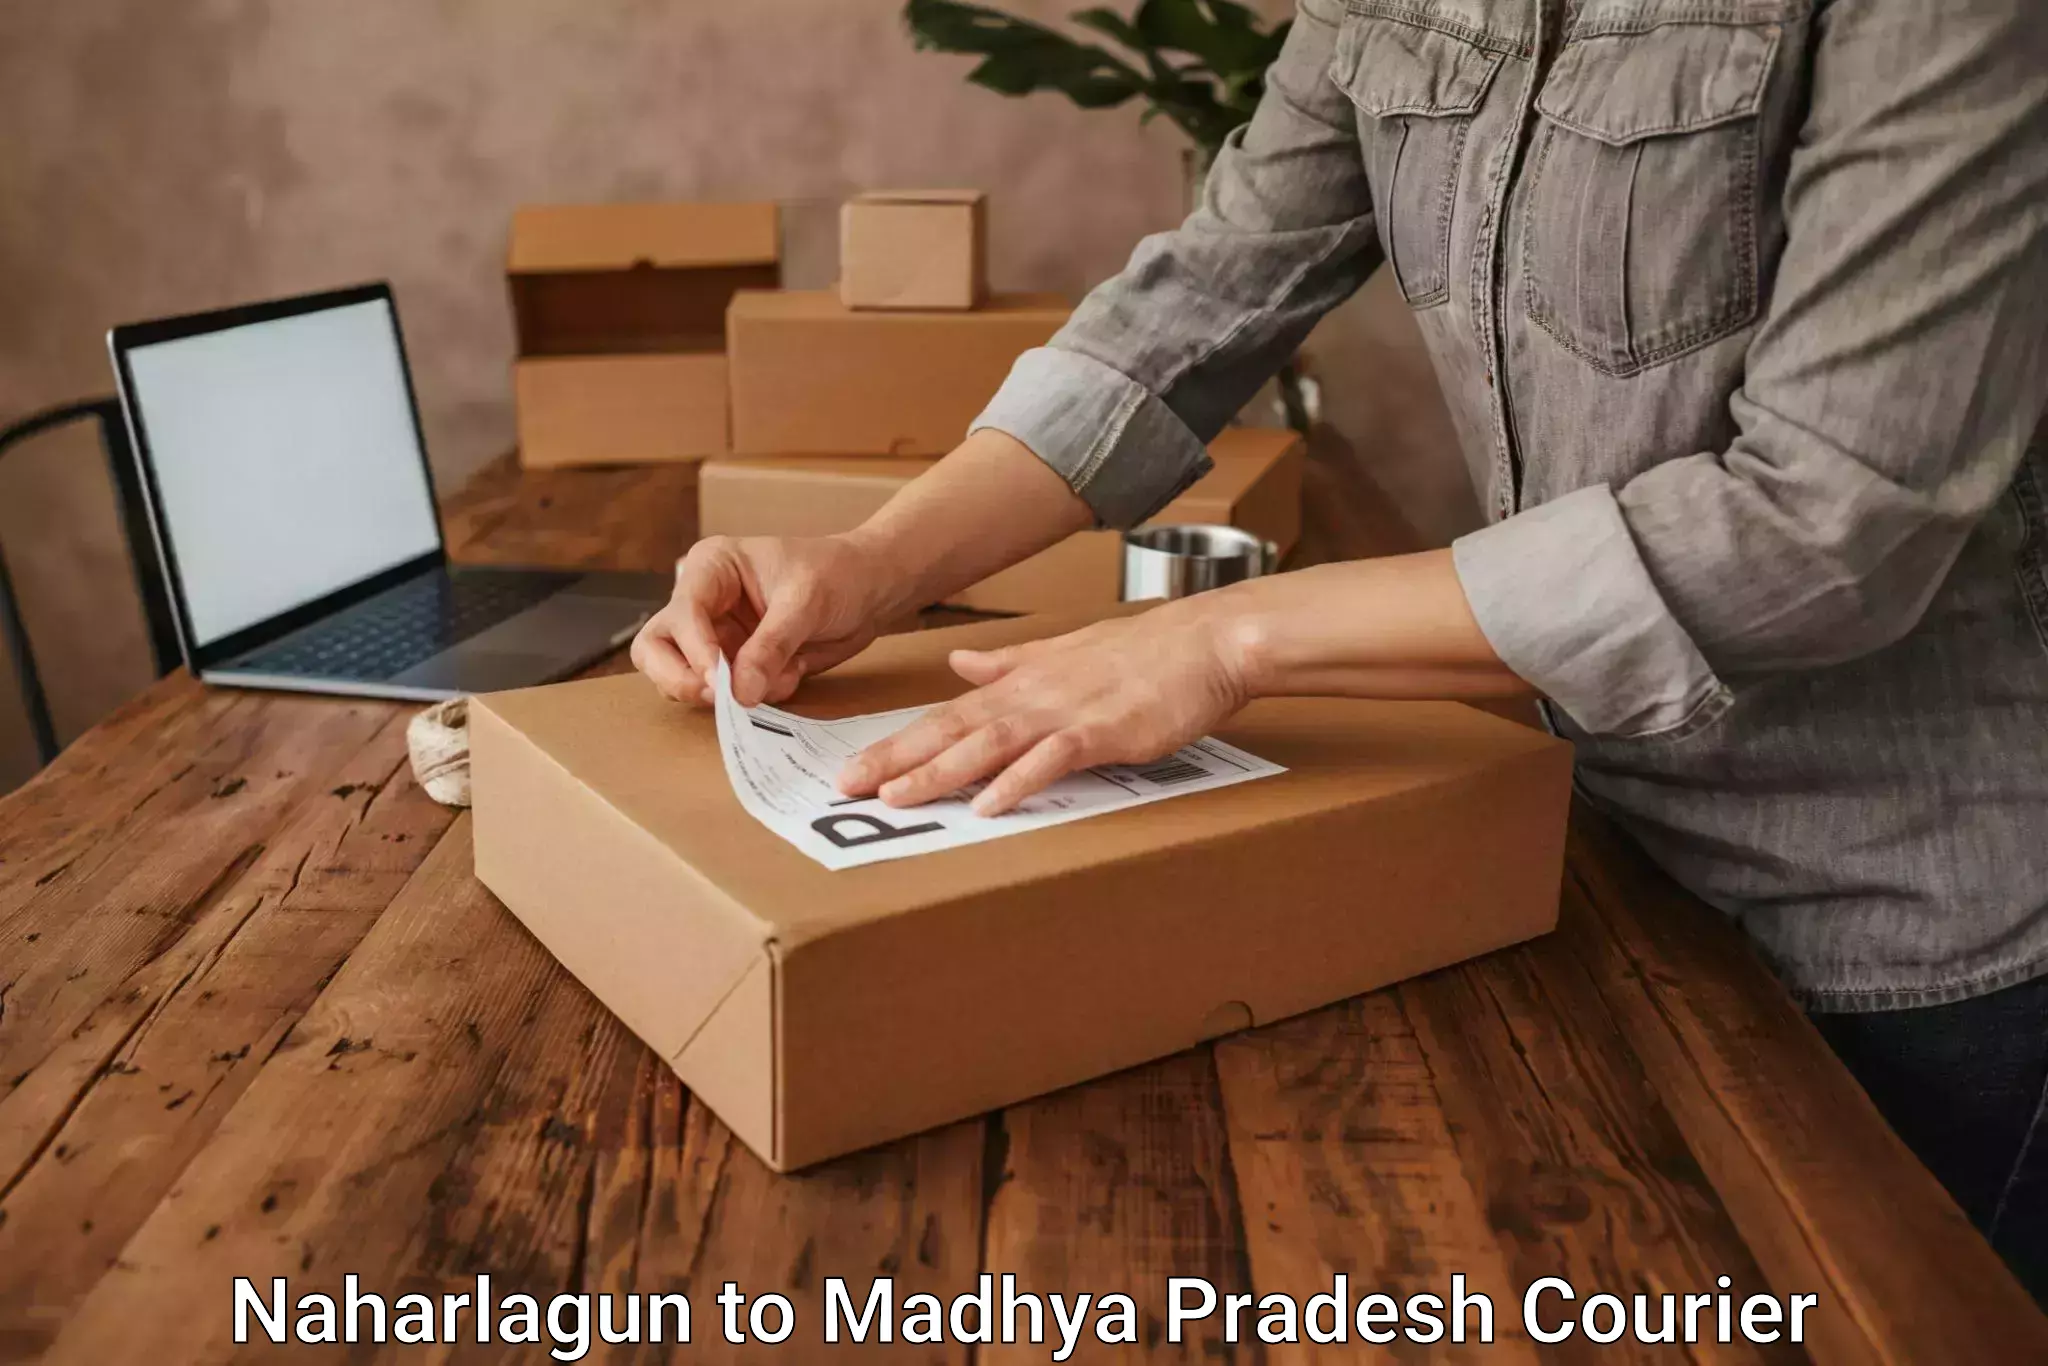 Professional courier handling Naharlagun to Budaganj